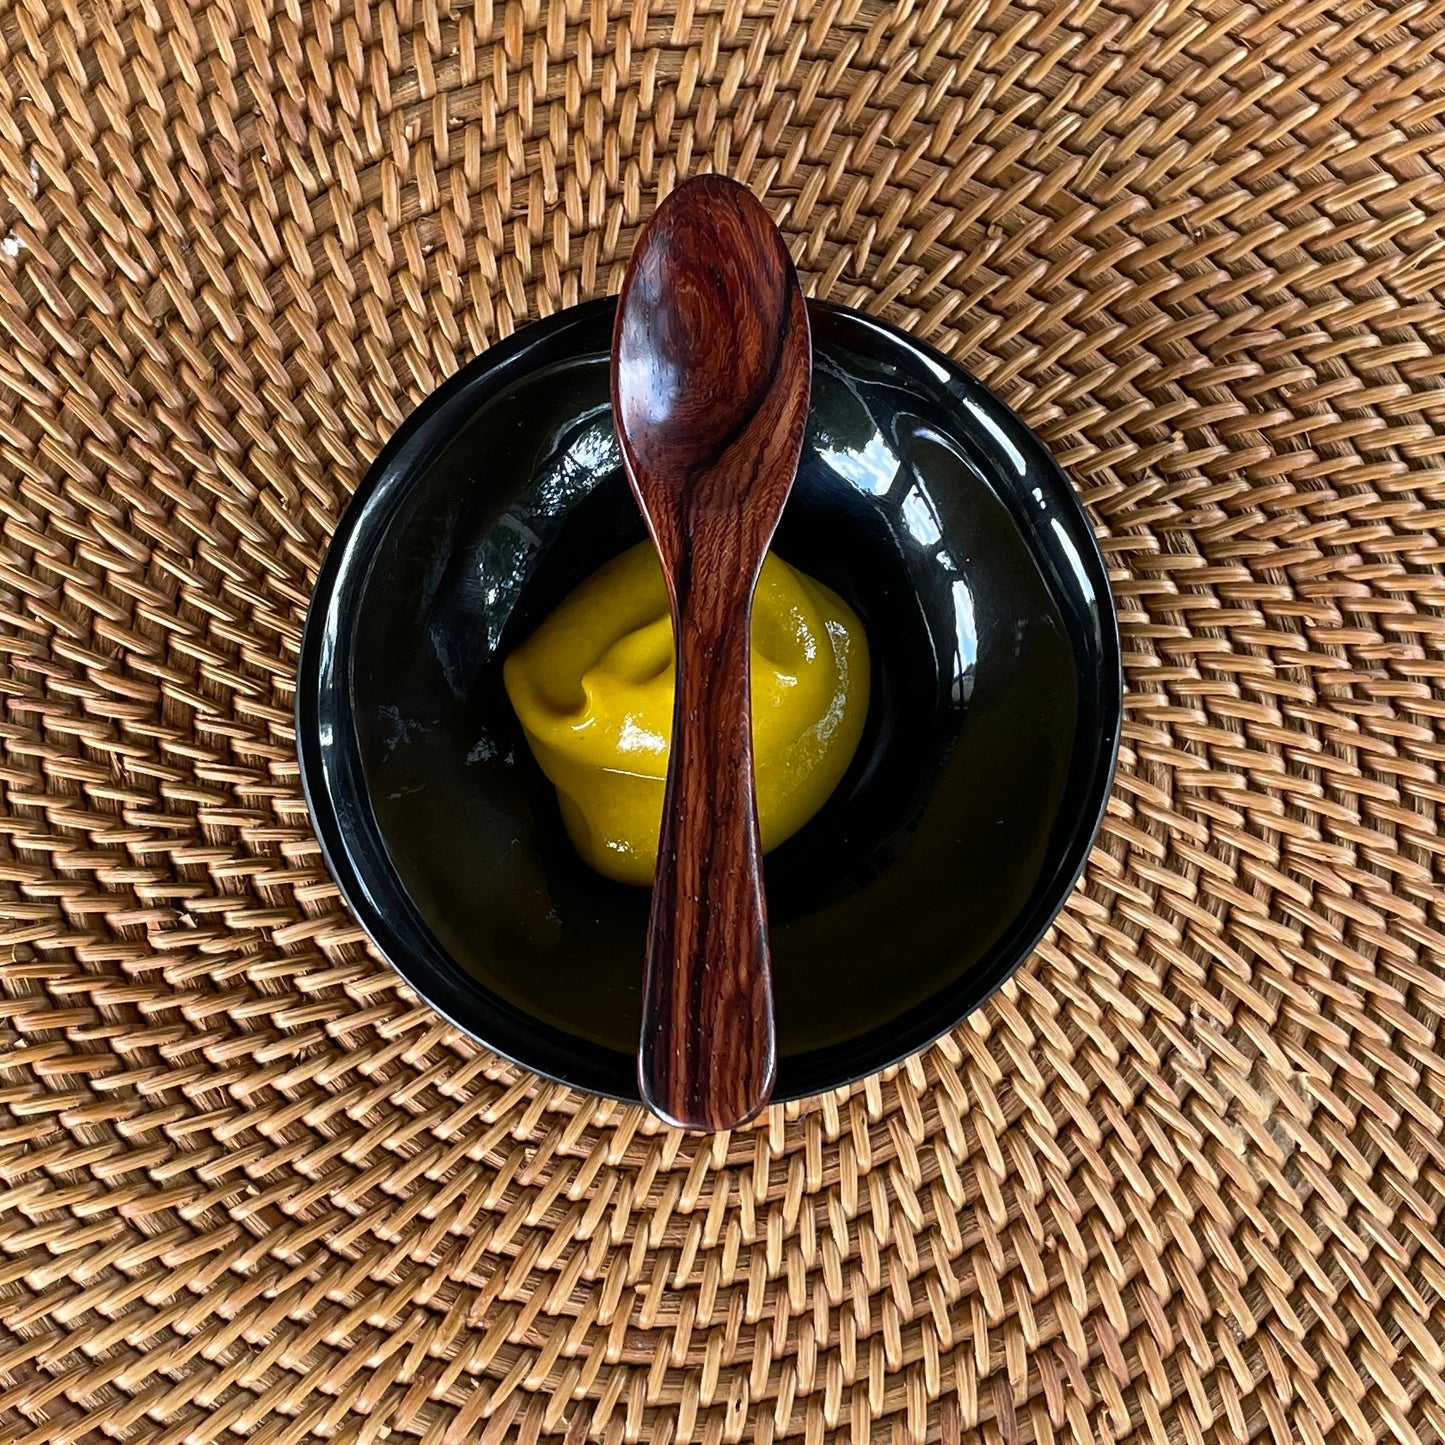 Mustard Spoon